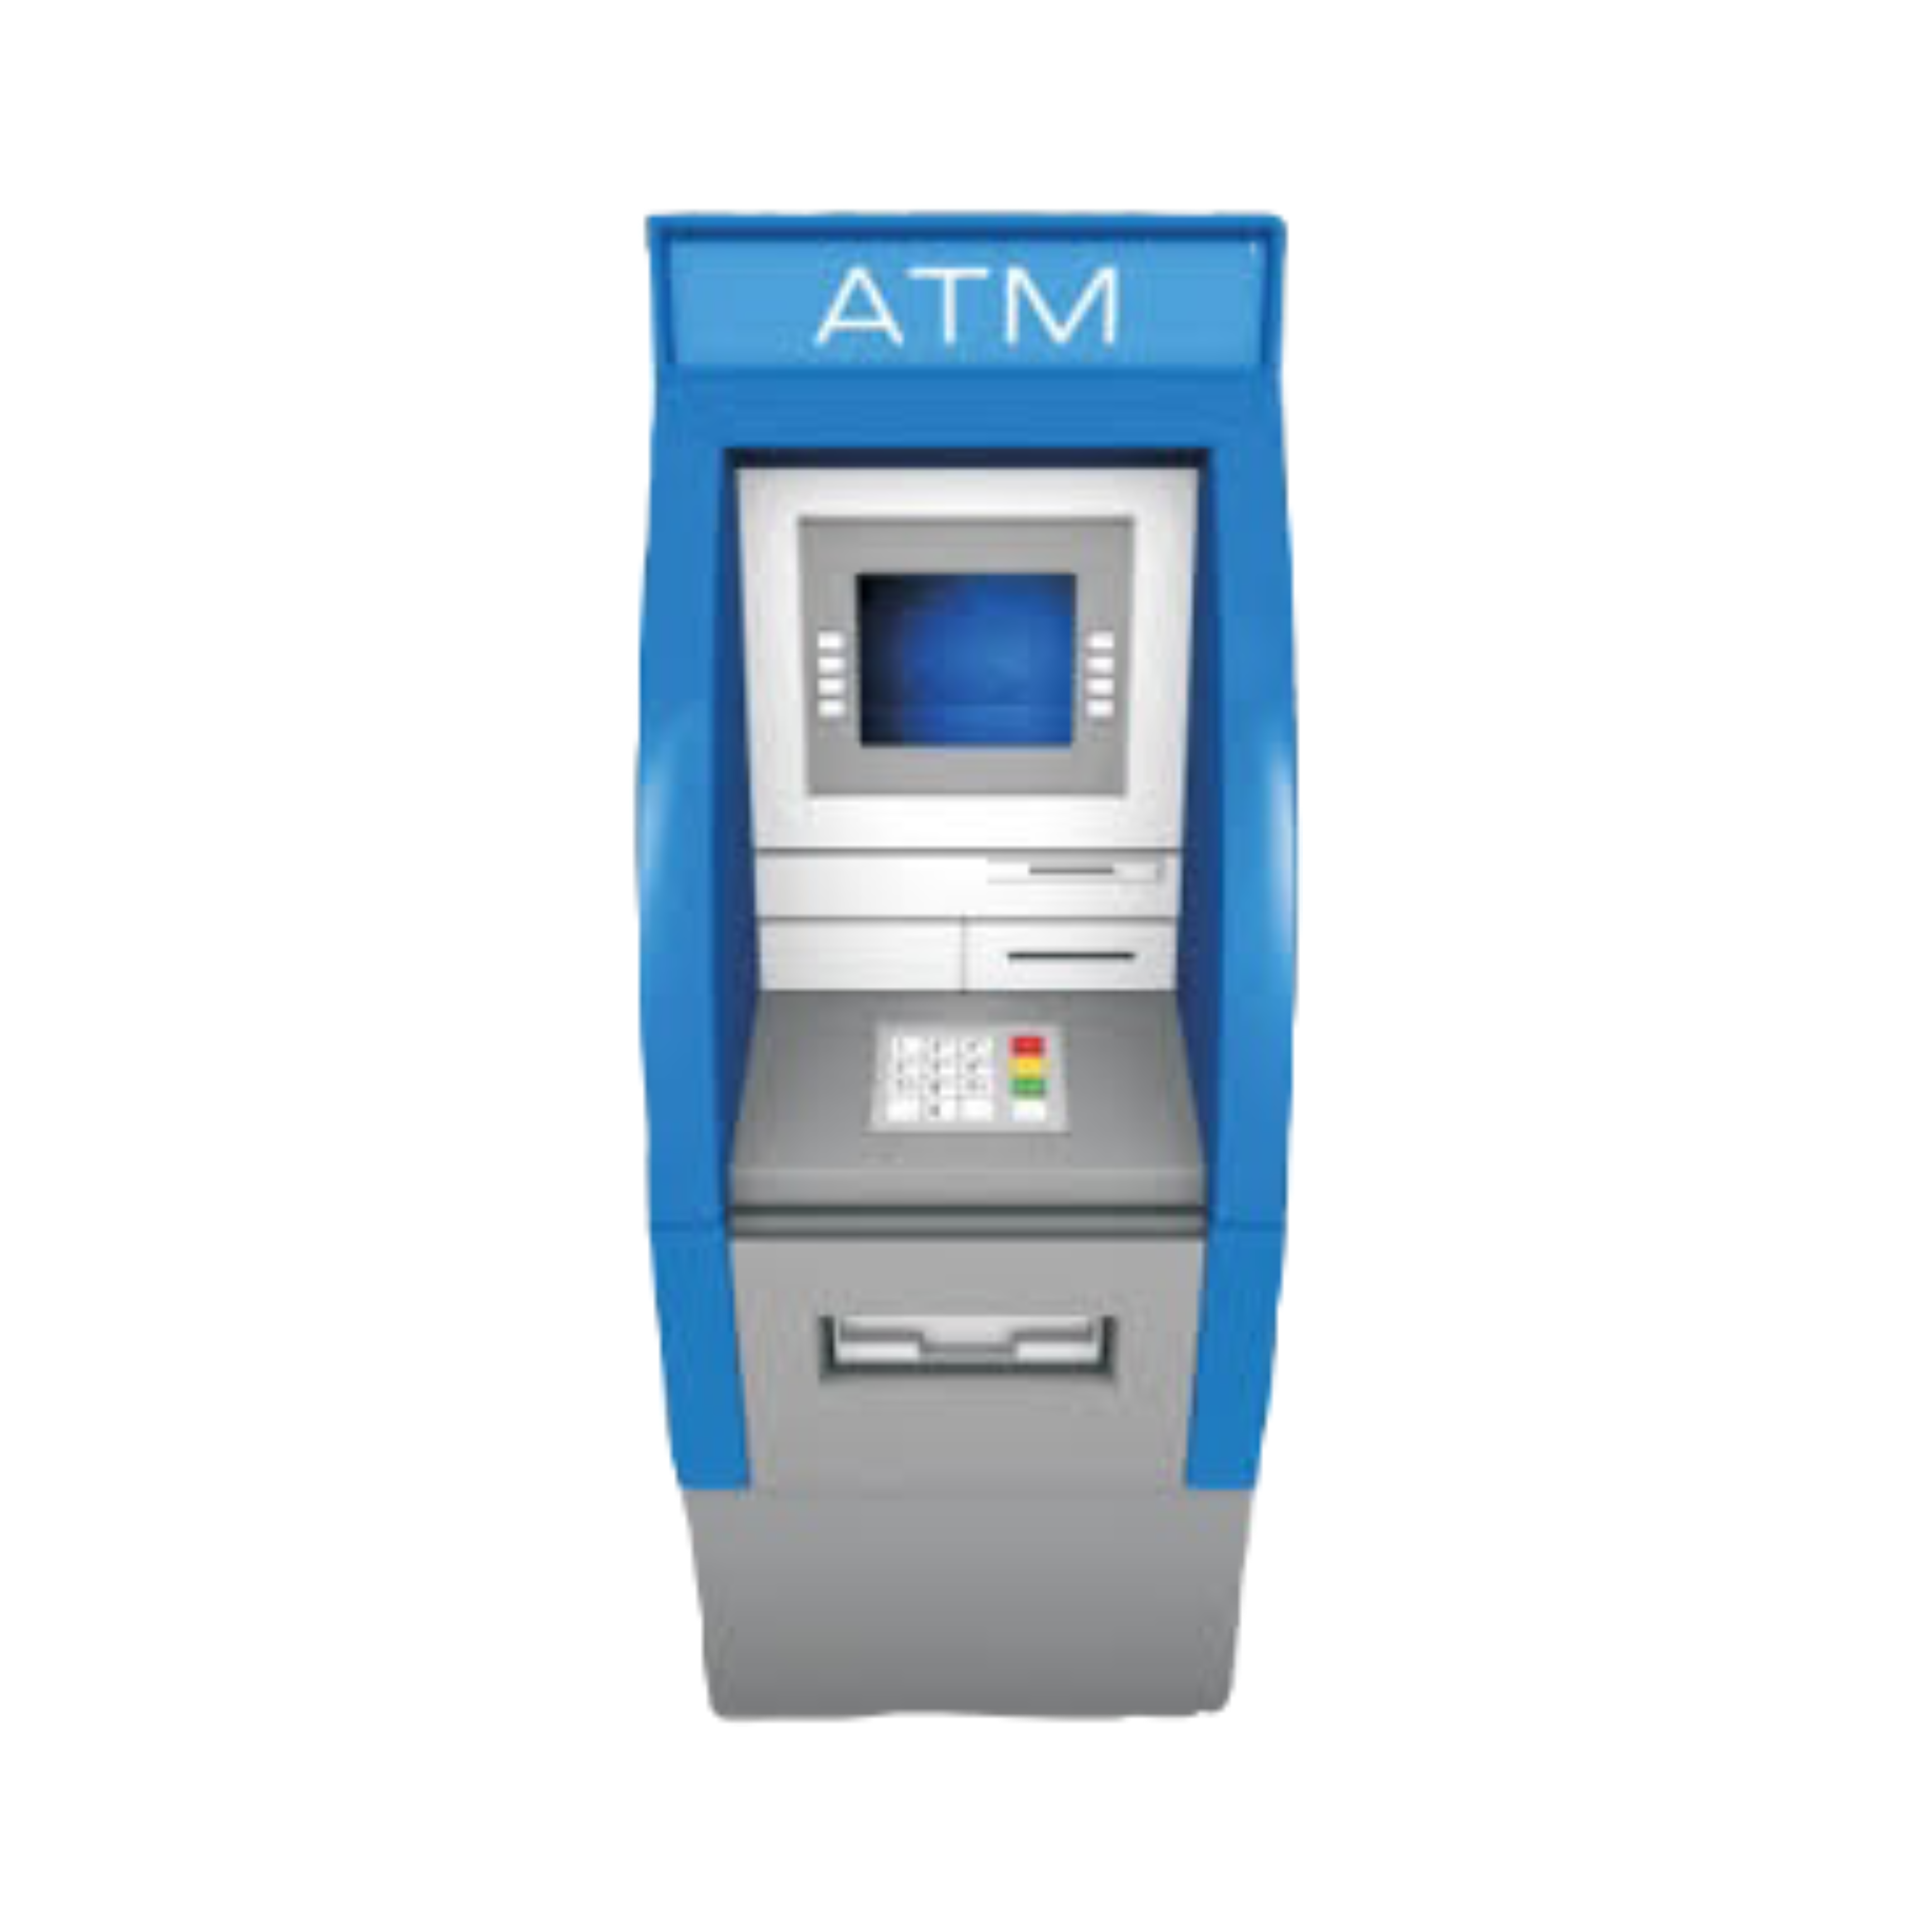 T me dump atm. Банкомат ATM 60001256. ATM дека ATM Grey fl5065. ATM 710. ATM 1990.